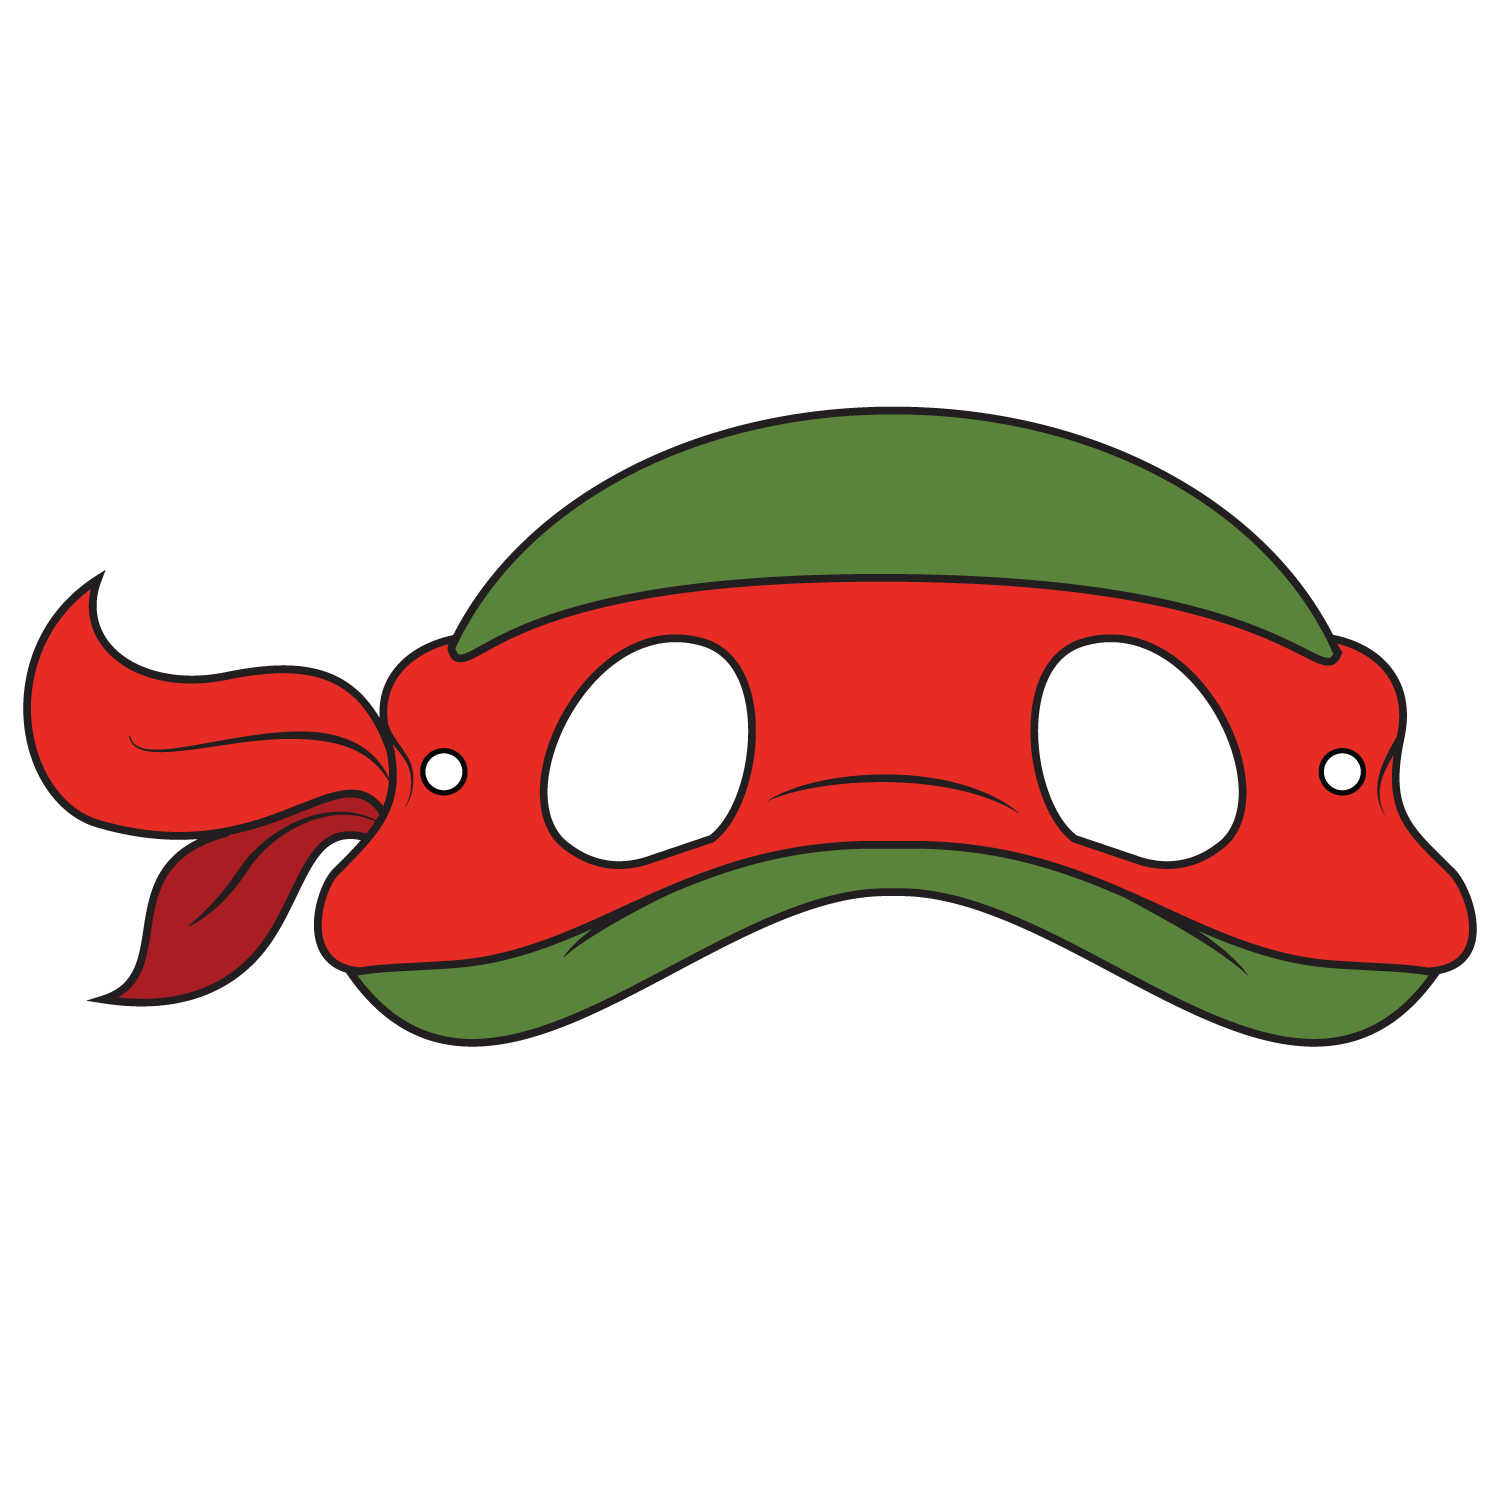 Teenage Mutant Ninja Turtles Mask Template | Free Printable - Teenage Mutant Ninja Turtles Free Printable Mask